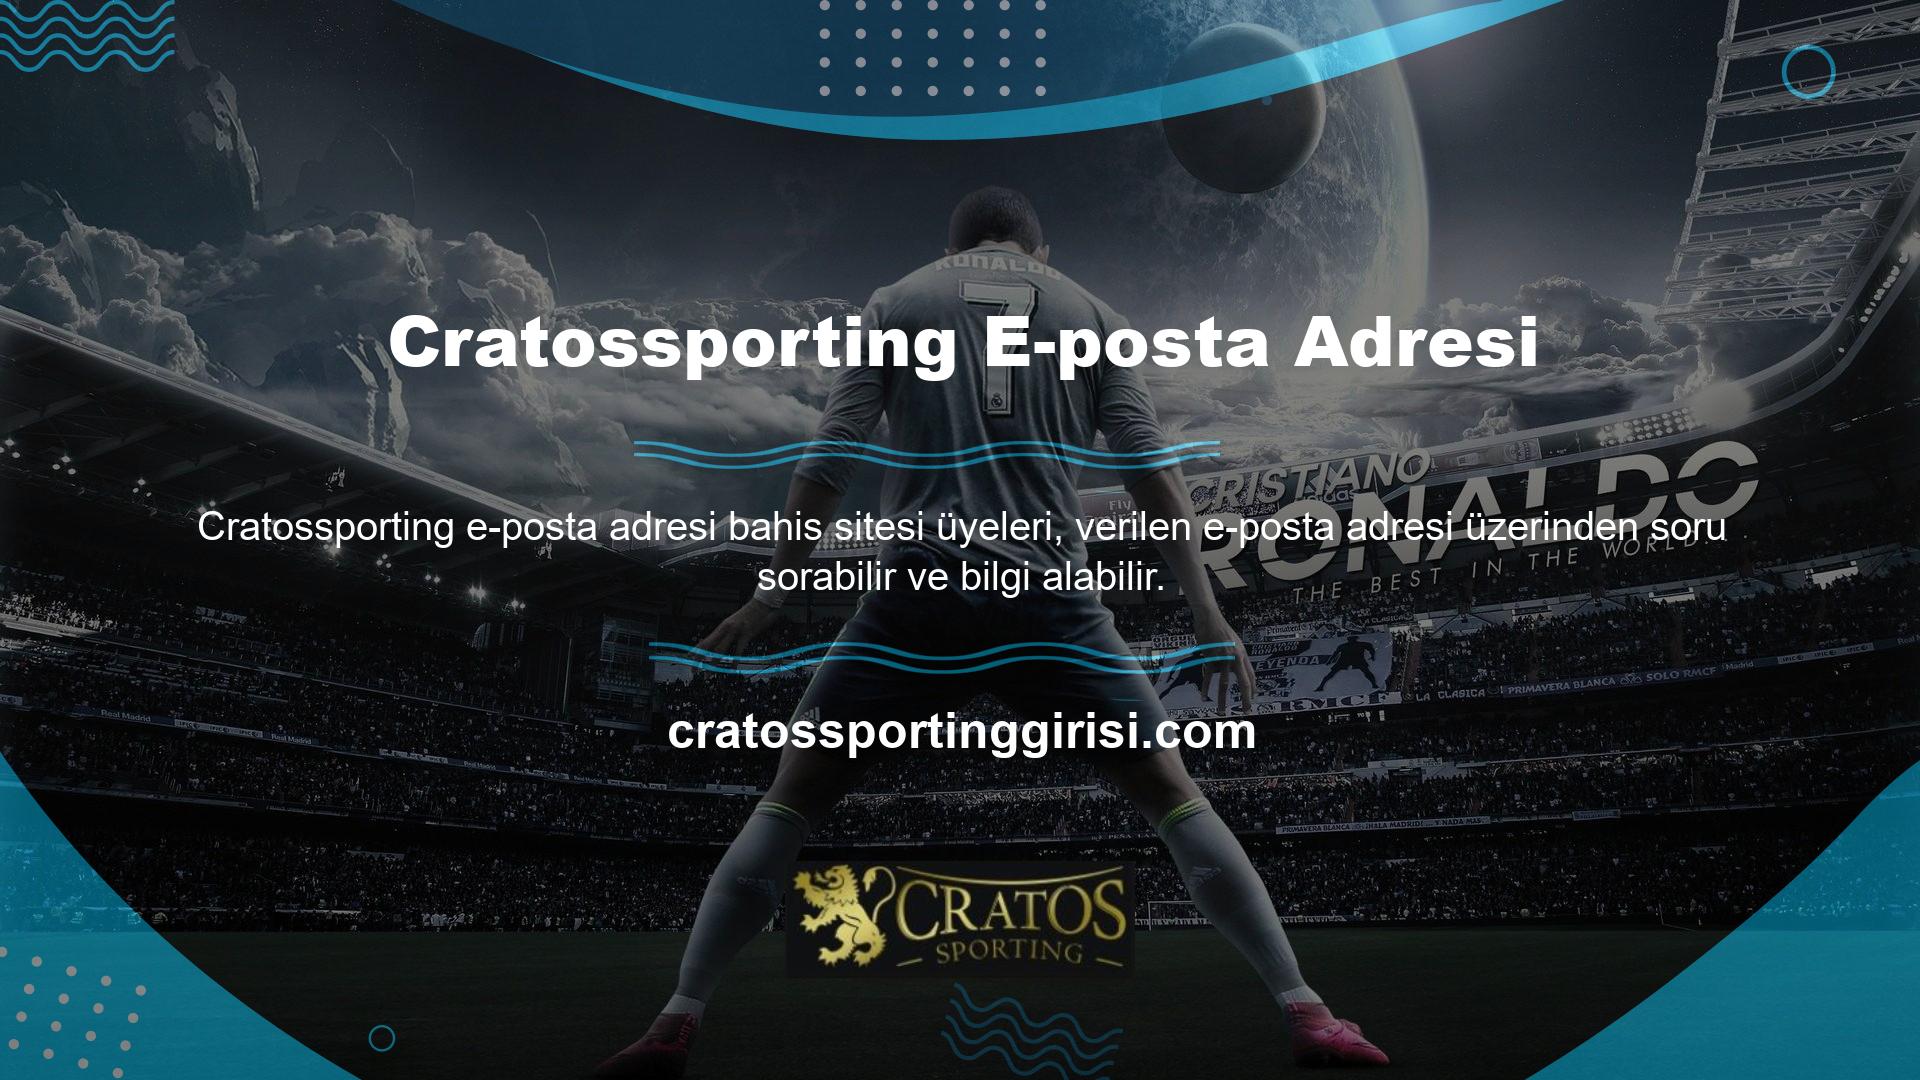 E-posta adresim Cratossporting